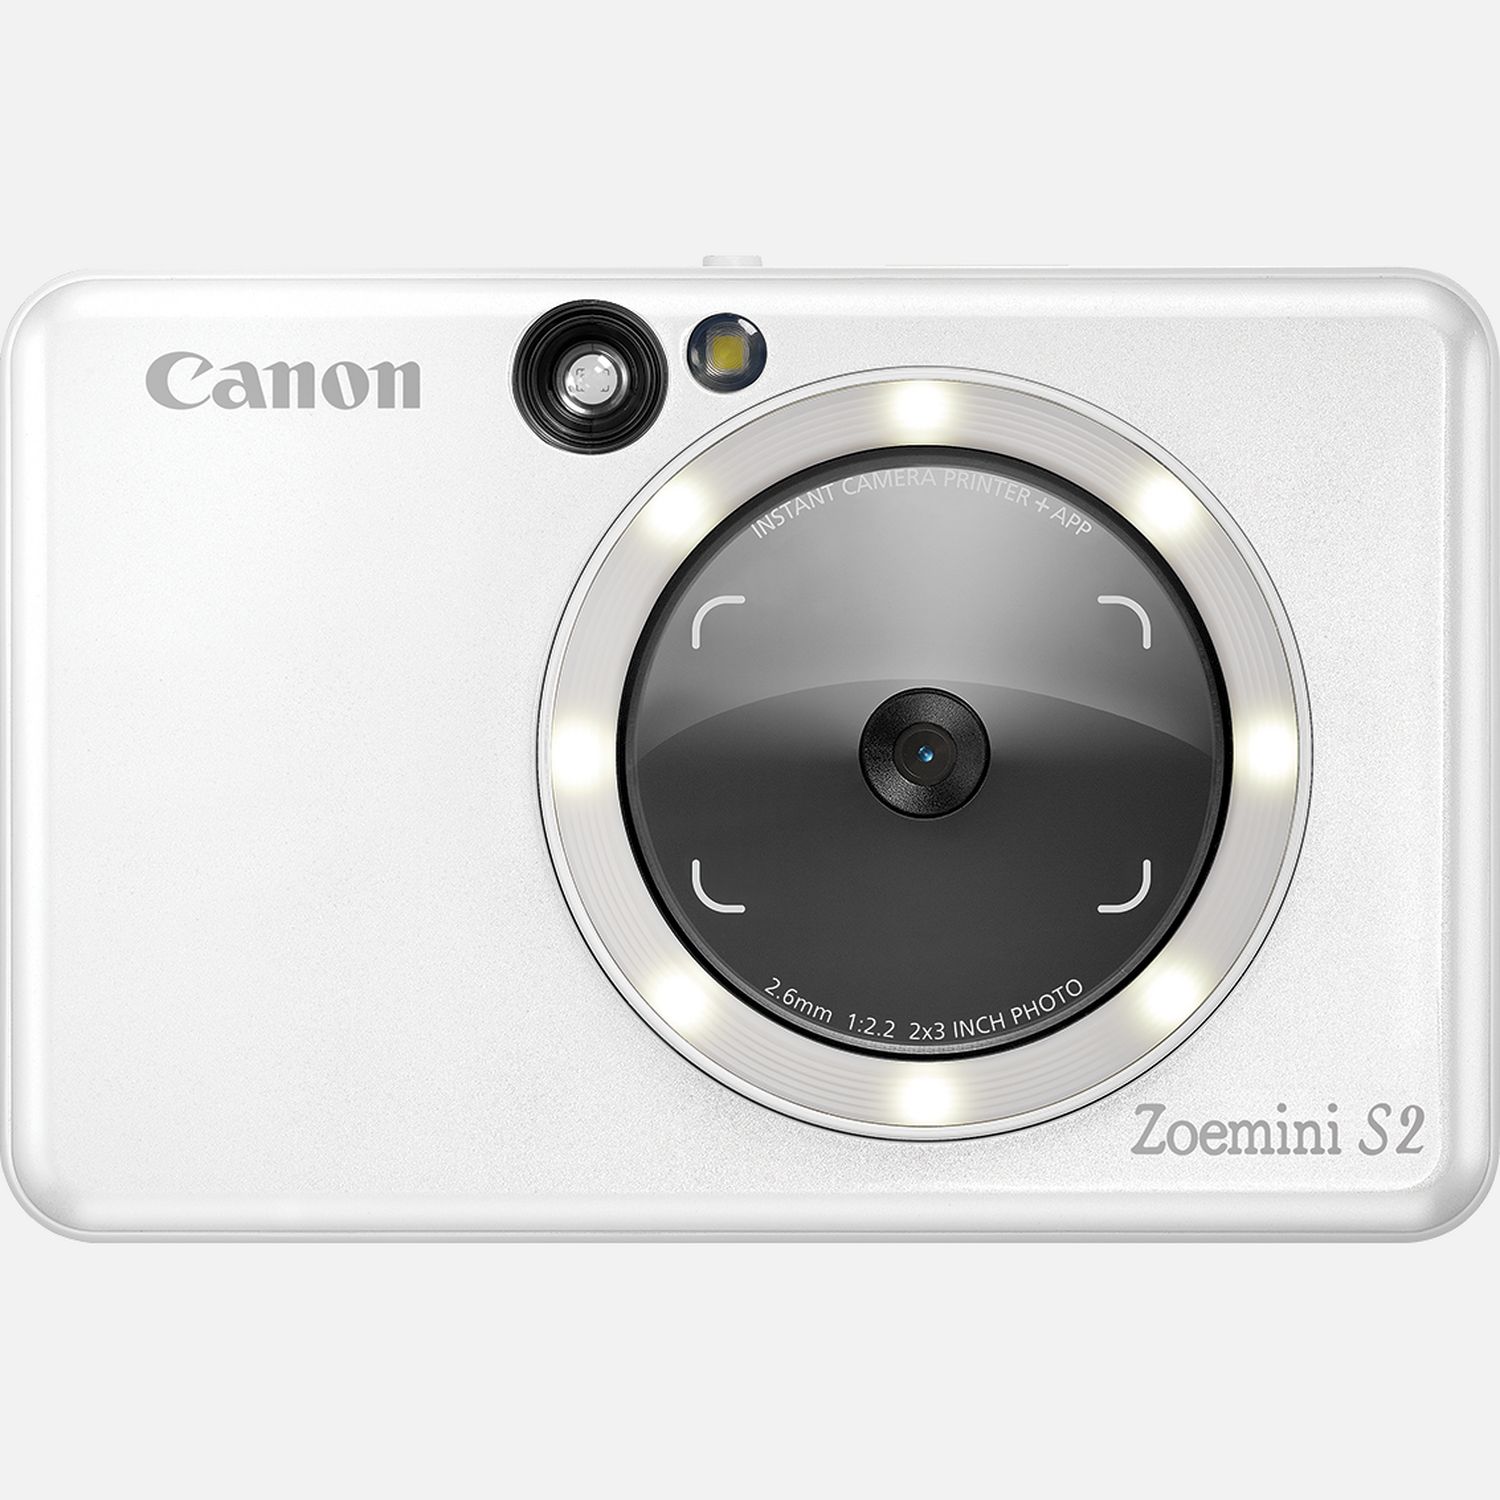 Compra Cámara impresora fotográfica instantánea Canon Zoemini S2 en color,  blanco perla — Tienda Canon Espana